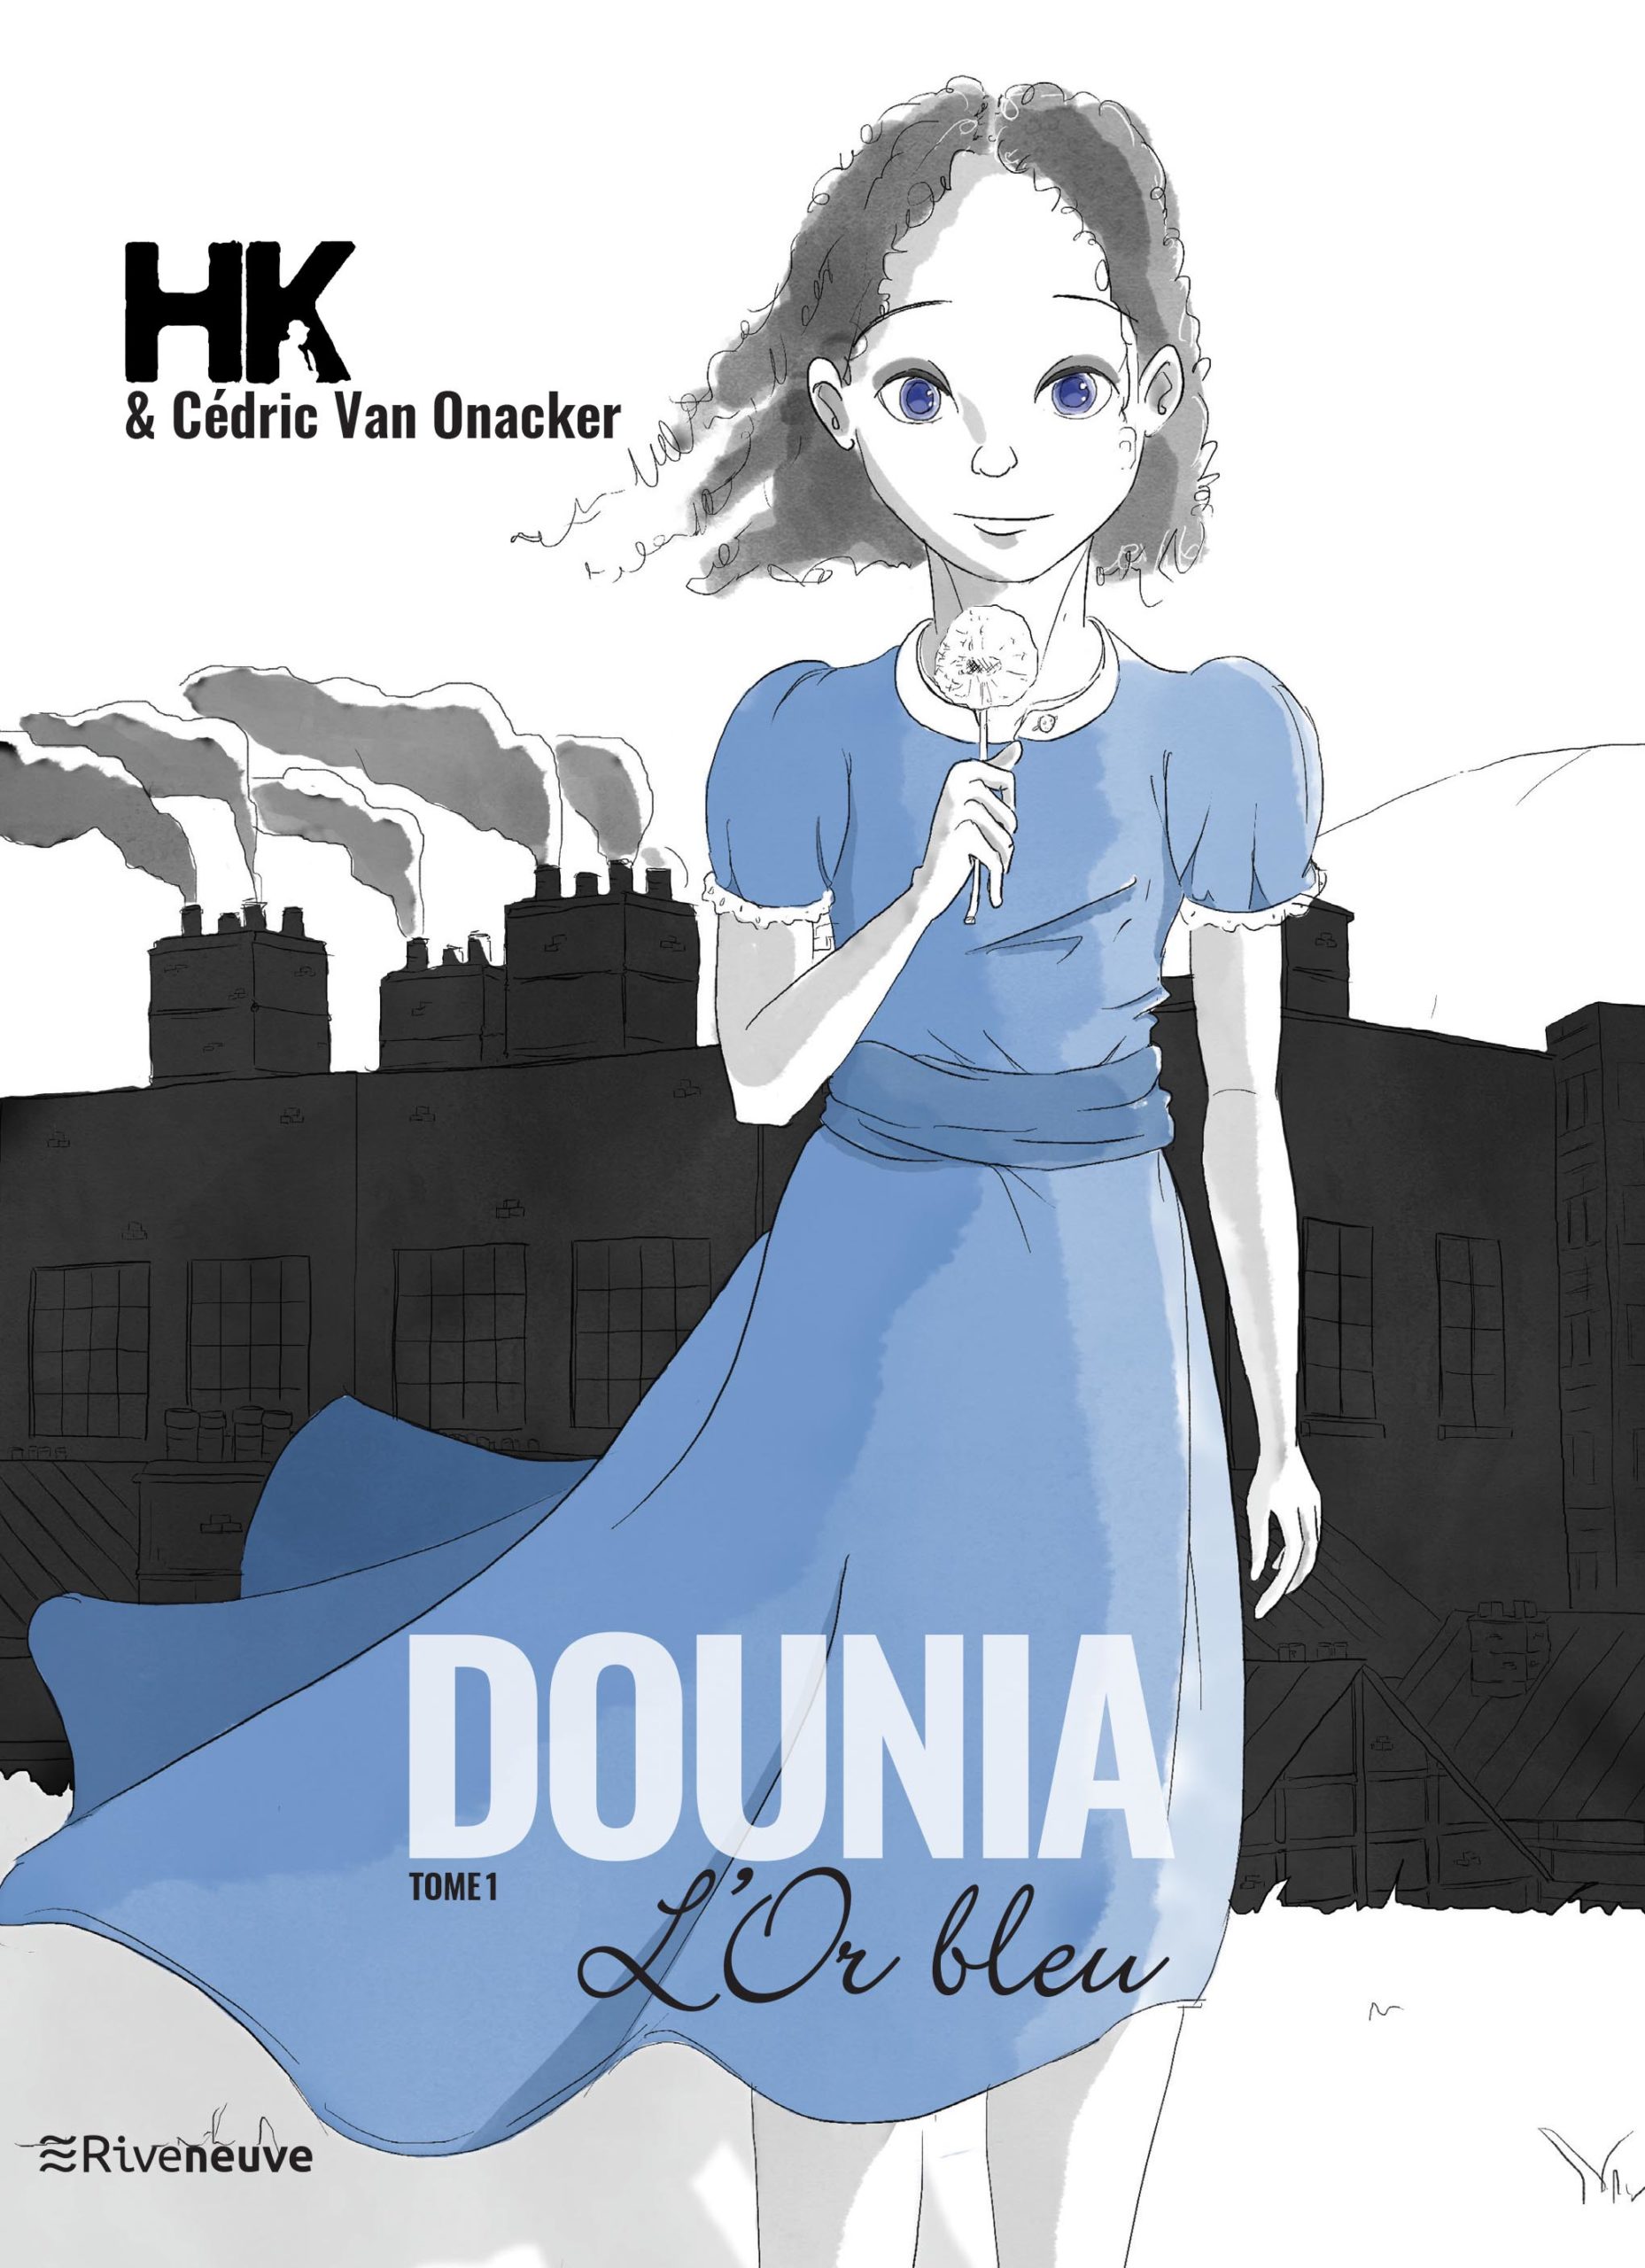 Dounia – Tome 1 : L’or Bleu